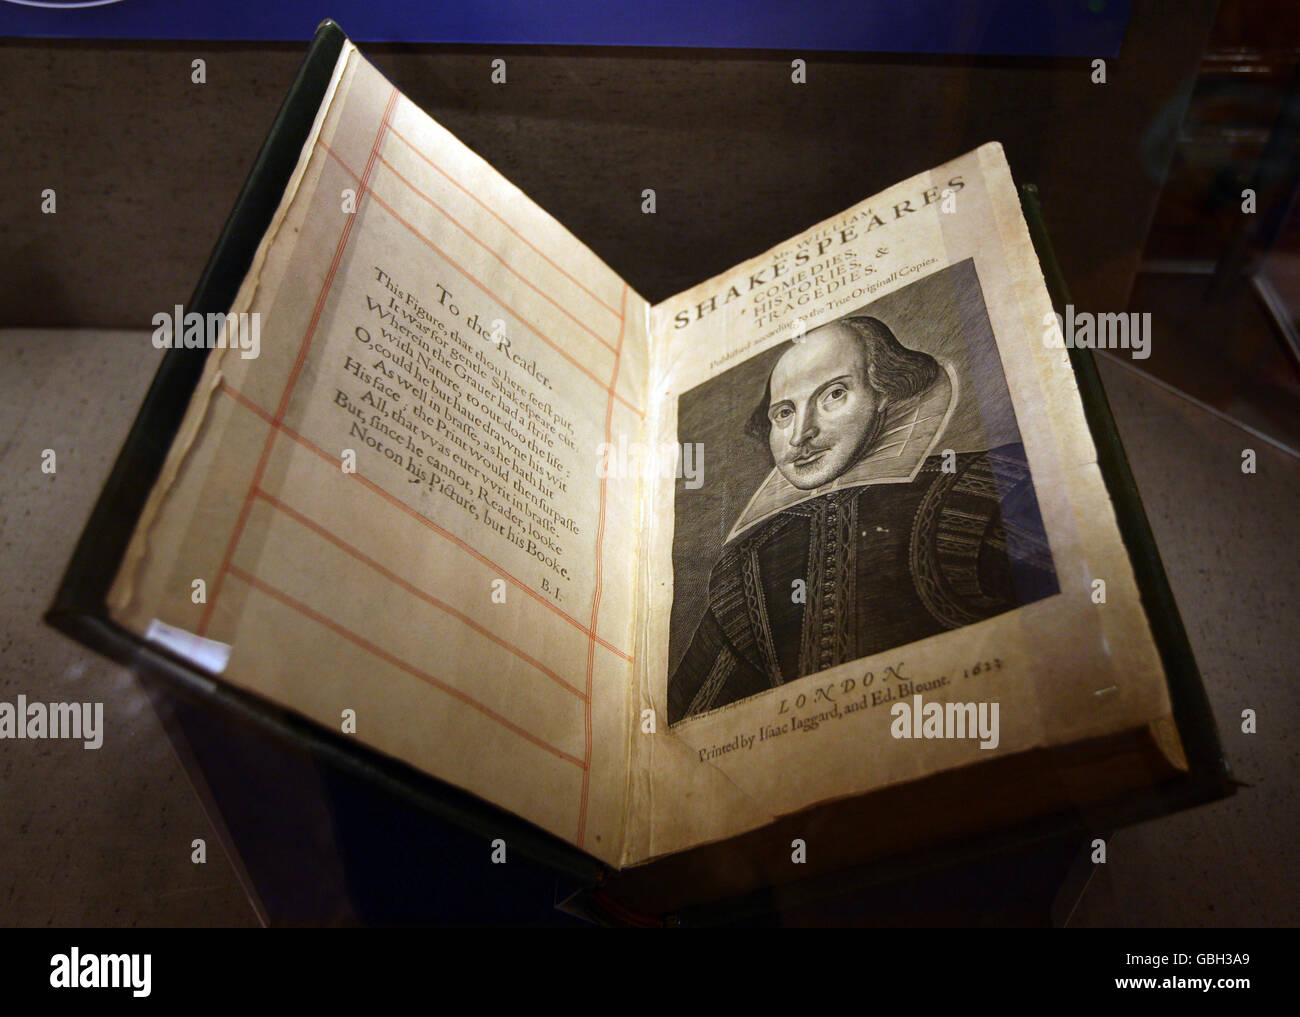 Eine Nahaufnahme der Ausgabe 1623 des ersten Folio von Shakespeares Stücken, zu sehen in John Ryland's Library in Manchester. Dr. Casson stellt heute sein neues Buch "Enter achargetacentlang by A Bear" vor. In dem Buch behauptet Dr. Casson, sechs neue Stücke entdeckt zu haben, die alle von der Barde sind. Stockfoto